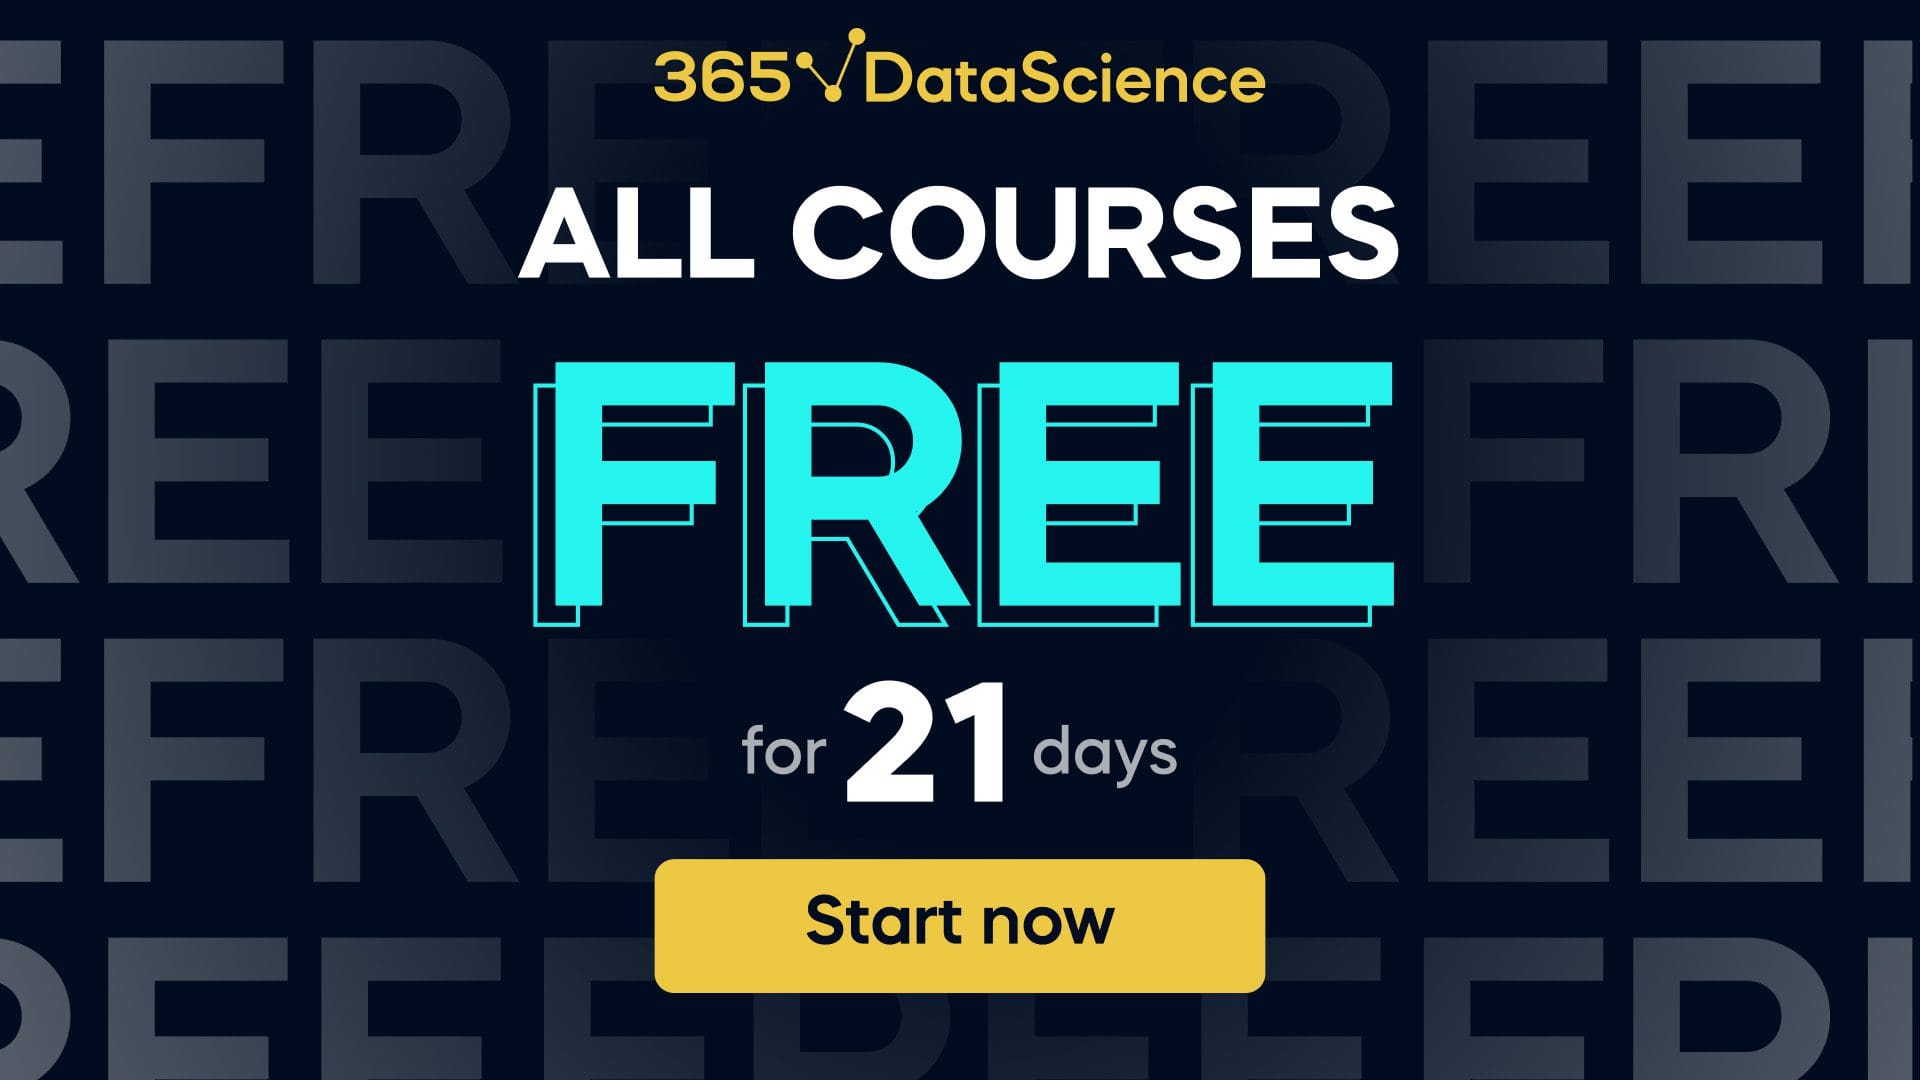 365 Knowledge Science programs free till November 21